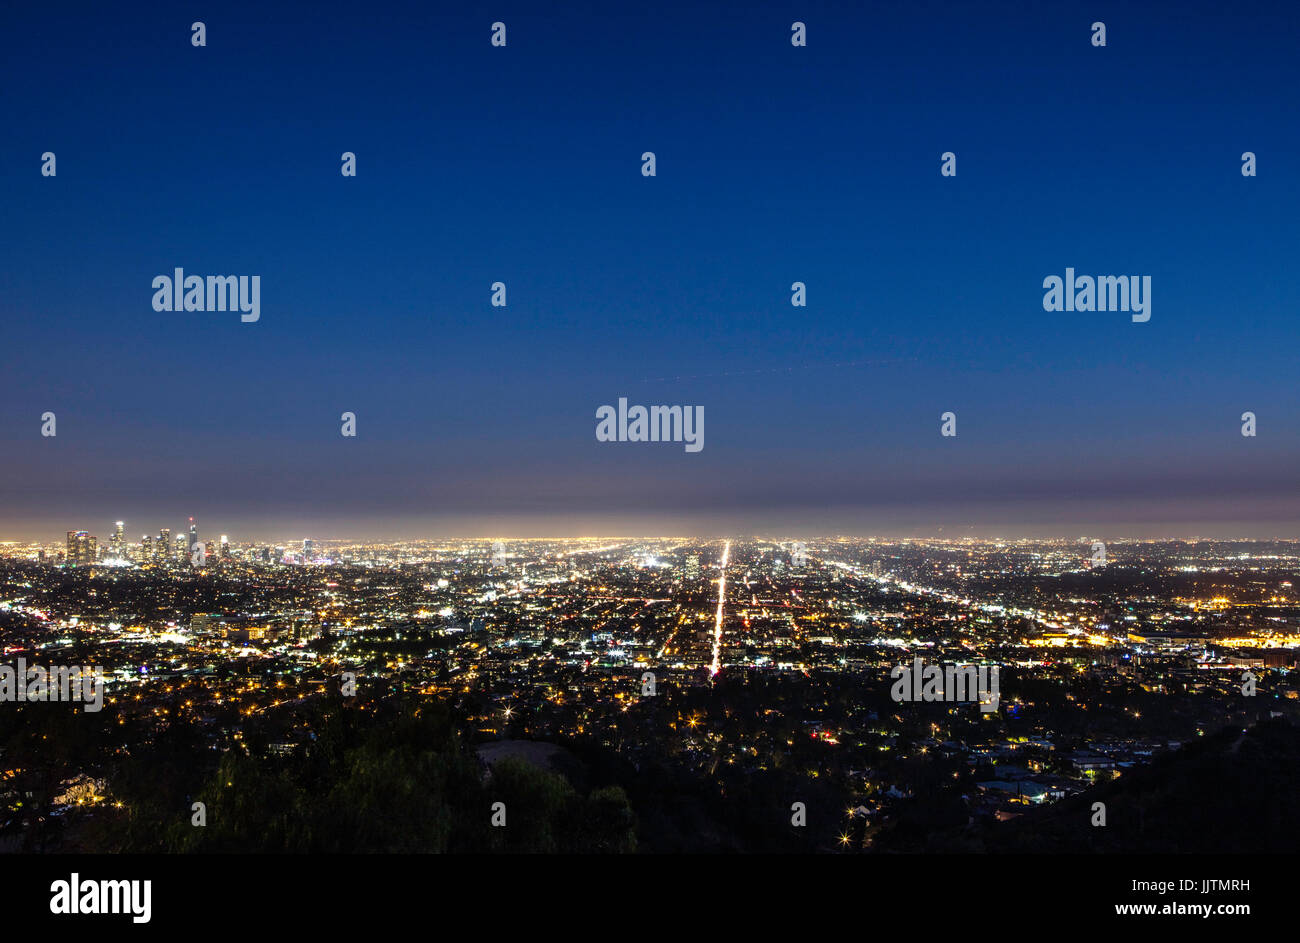 Vue nocturne de Los Angeles depuis l'observatoire de Griffith. Californie. ÉTATS-UNIS Banque D'Images